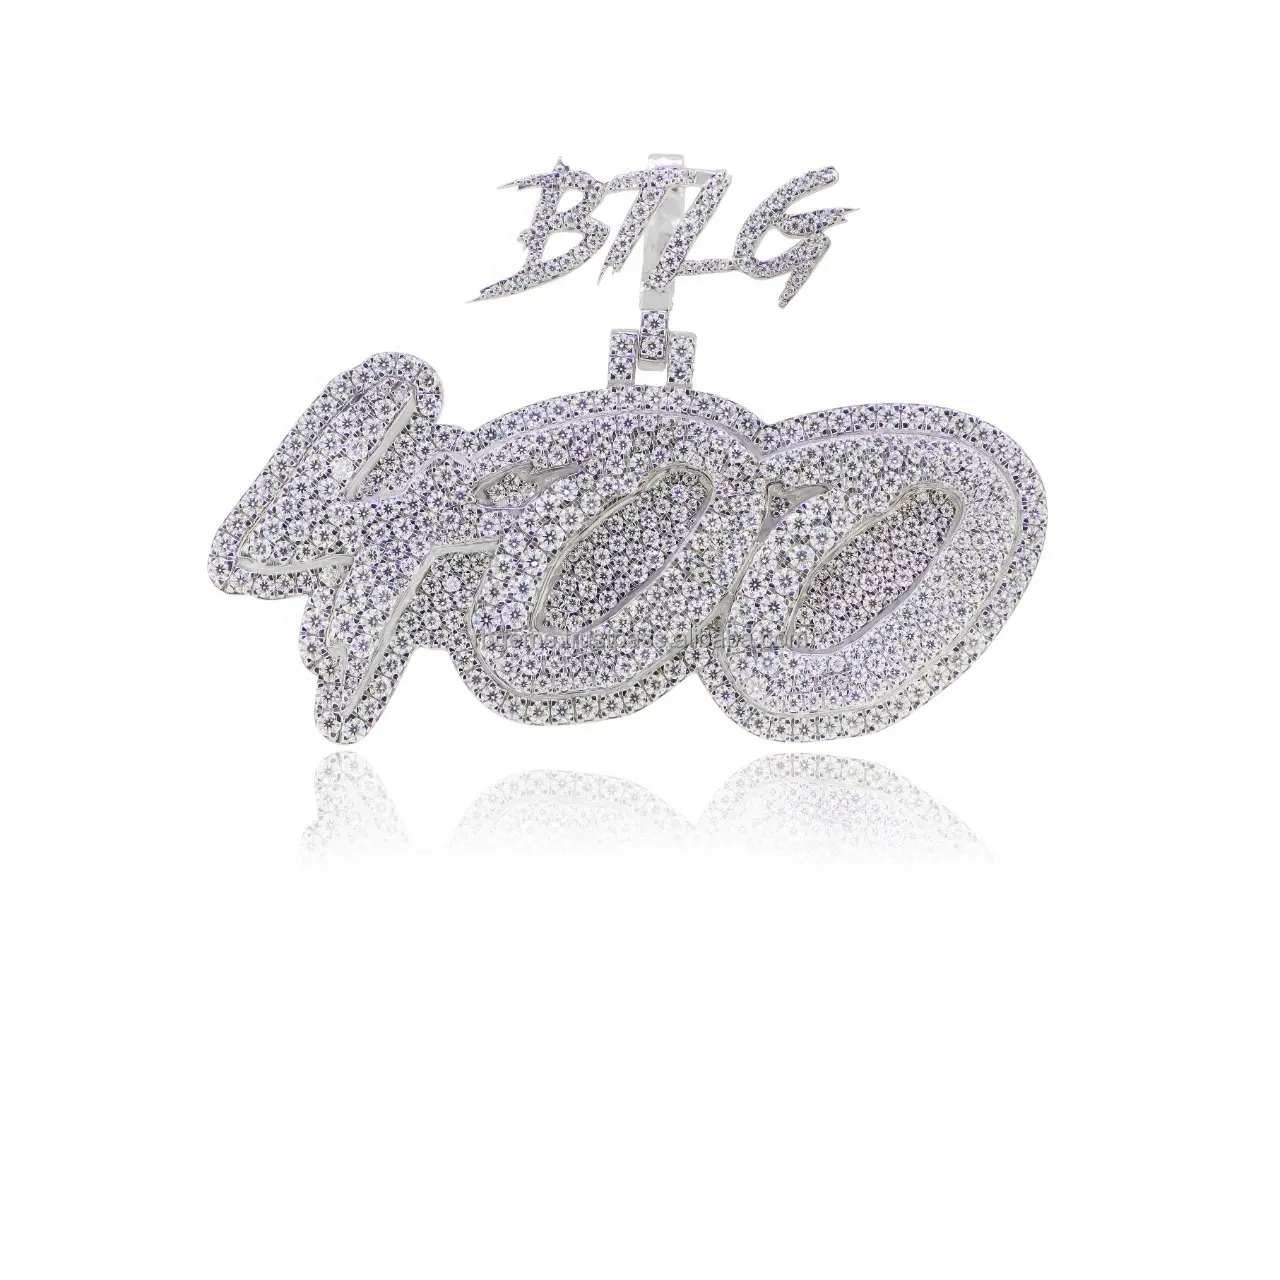 Con 29gm de Plata de Ley 925, este colgante de hip hop unisex con diamantes de 7,19ct, personifica el lujo y la moda.